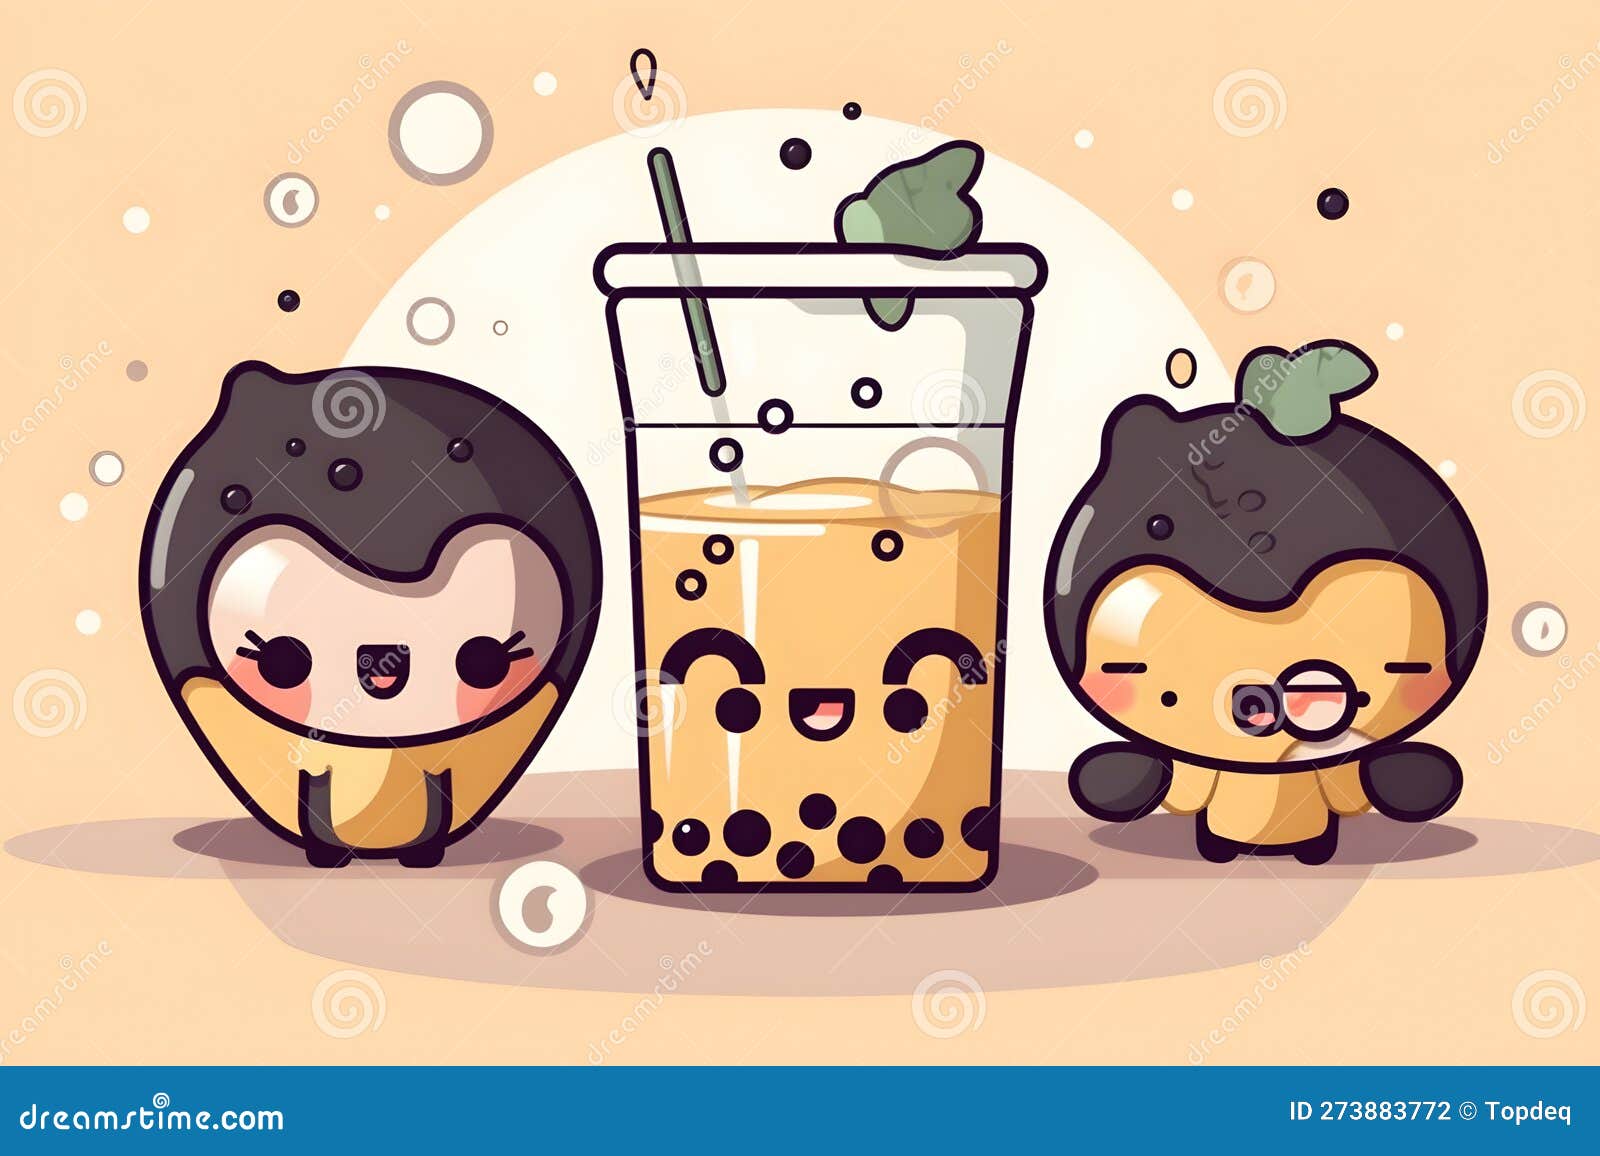 Xícara De Chá De Café Kawaii Fofa Com Personagem De Desenho Animado  Ilustração Stock - Ilustração de fofofo, alegria: 275331704